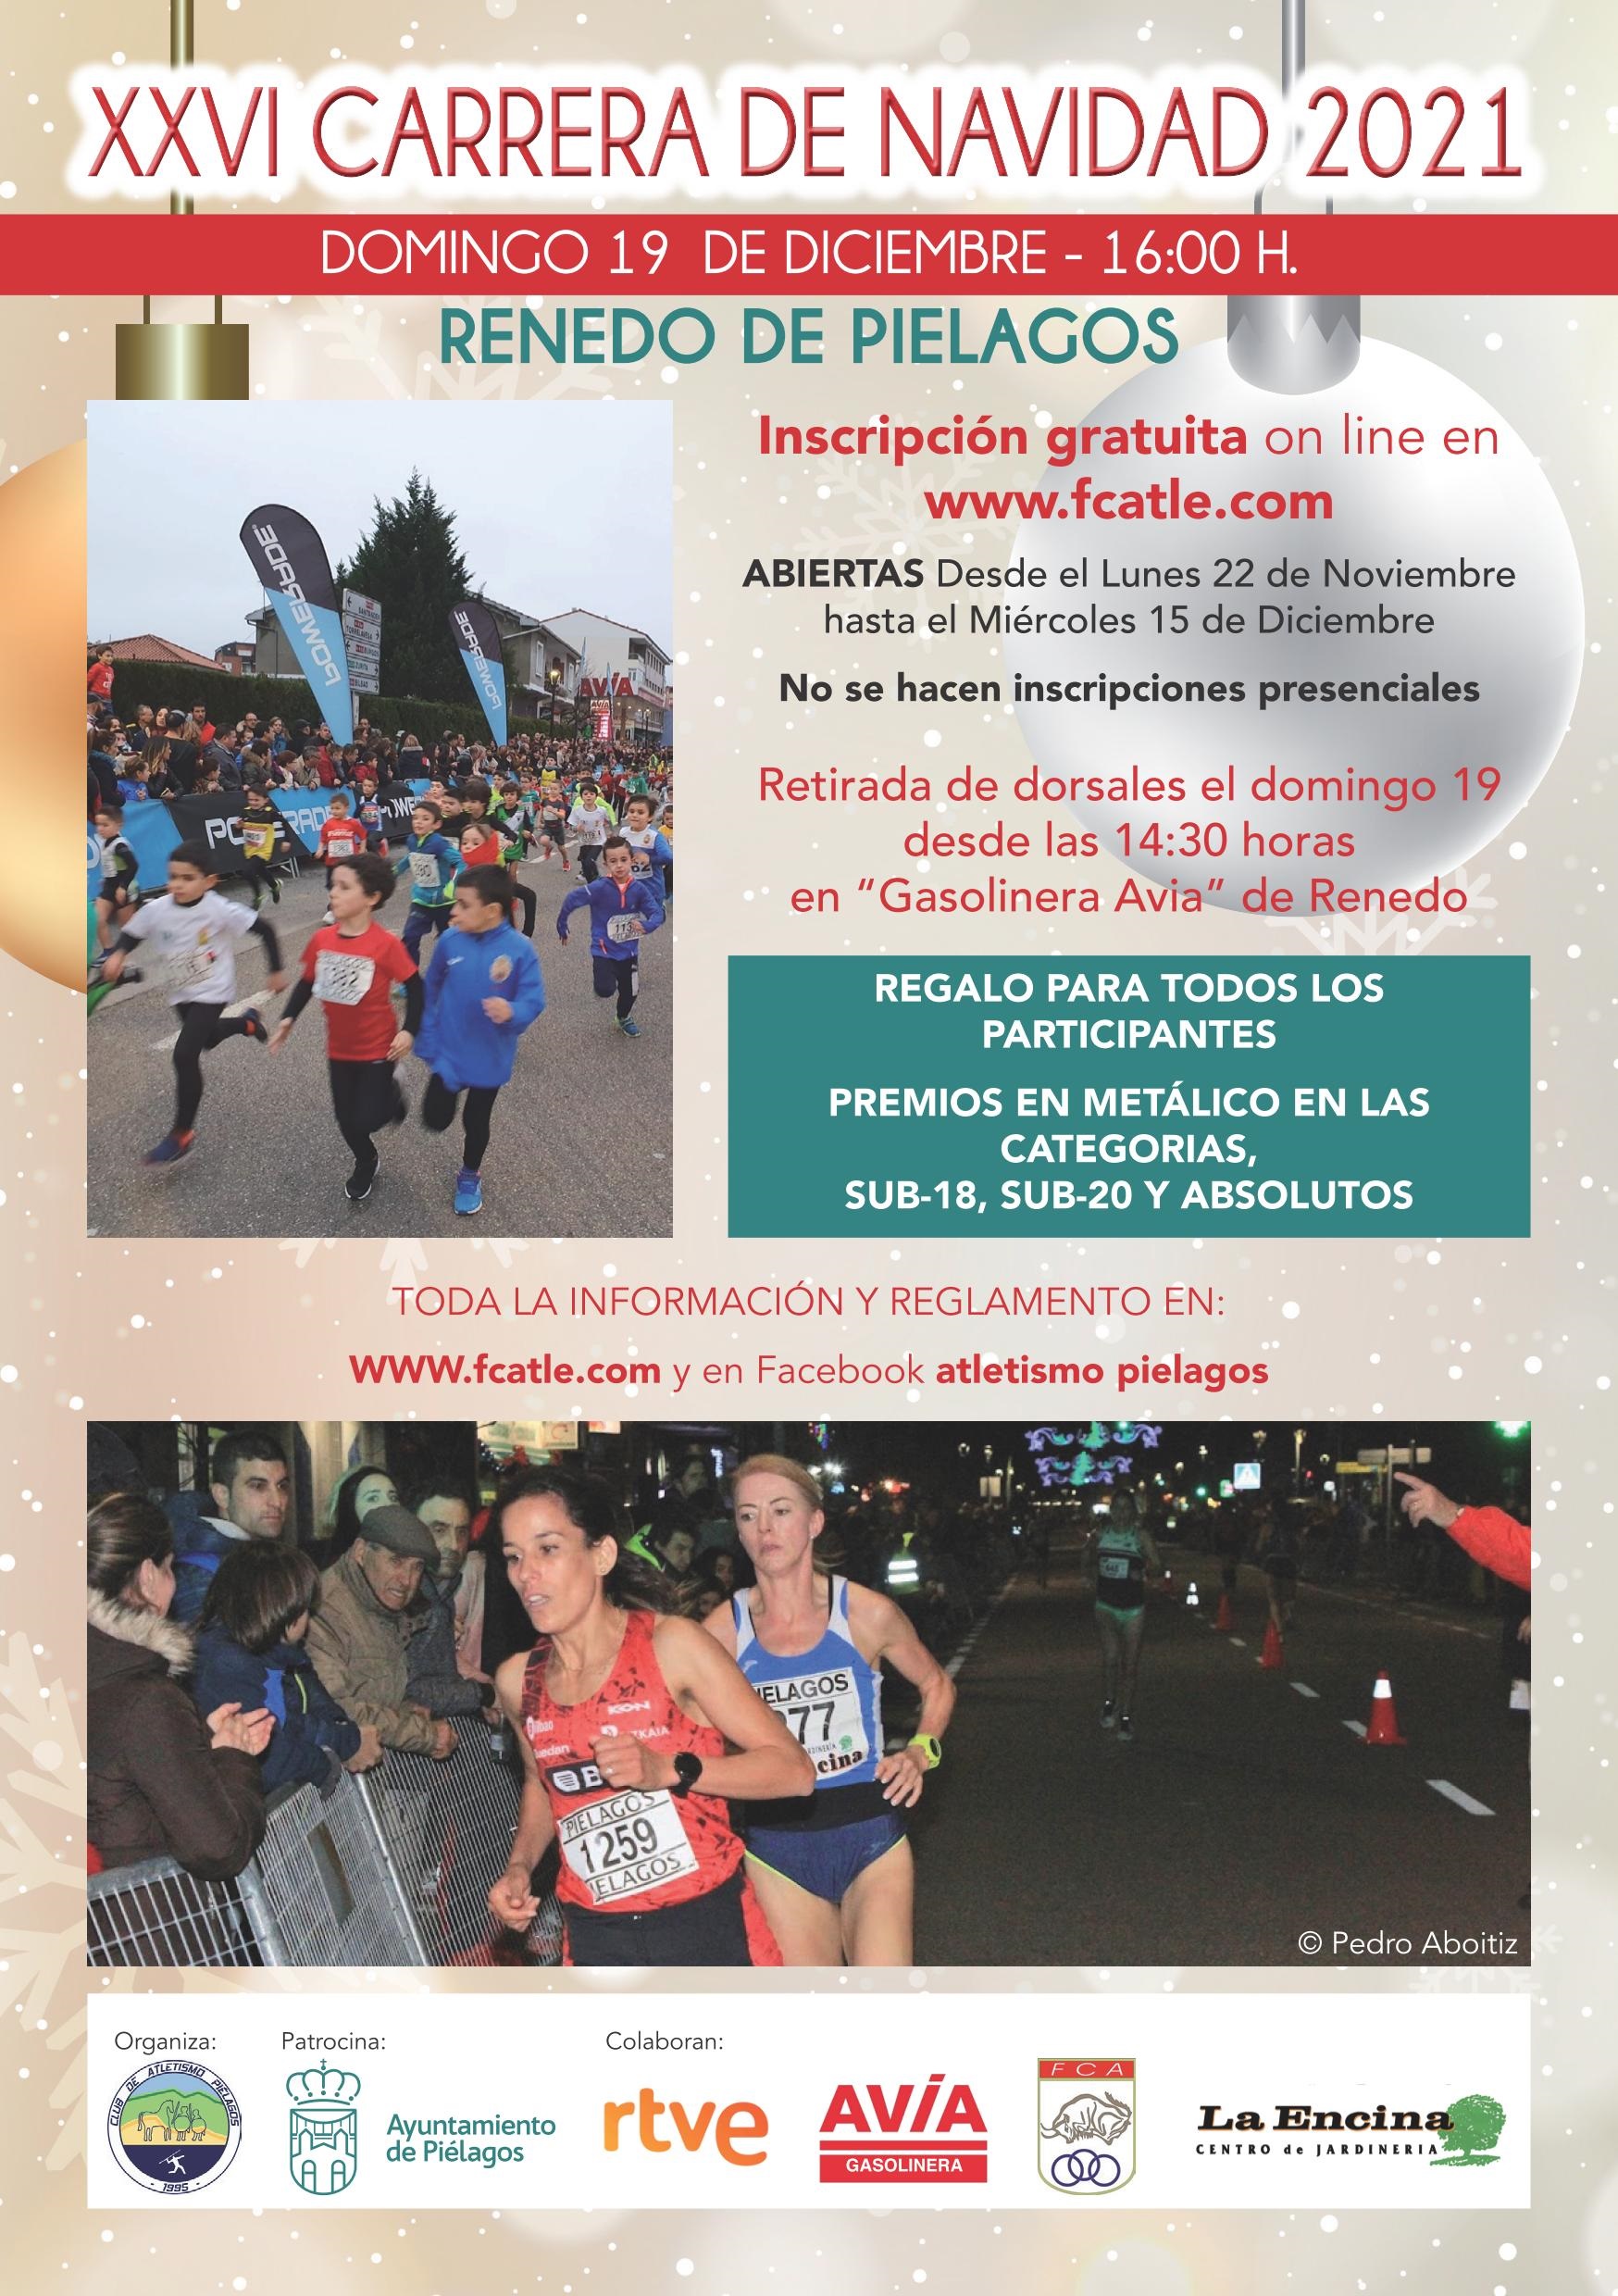 CANTABRIA.-Piélagos celebrará la XXVI Carrera de Navidad el 19 de diciembre en Renedo